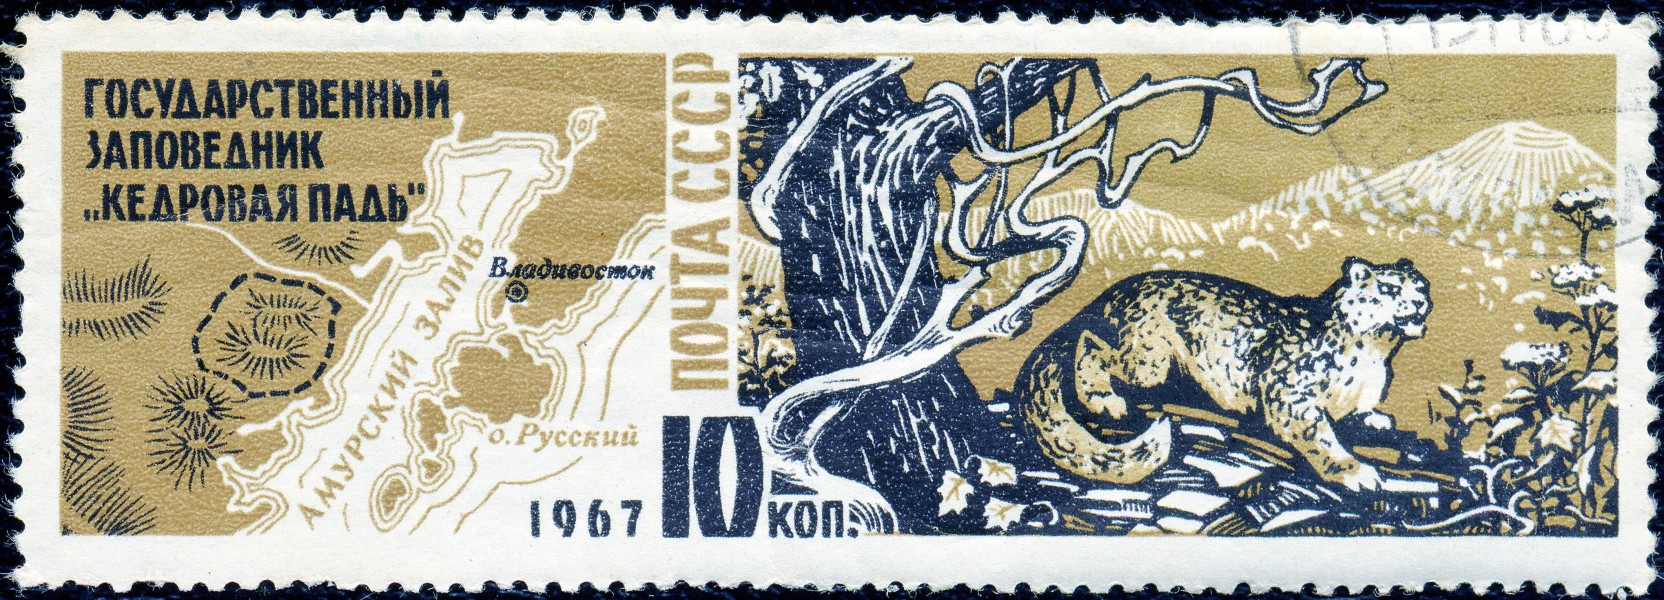 1967. Государственный заповедник Кедровая падь